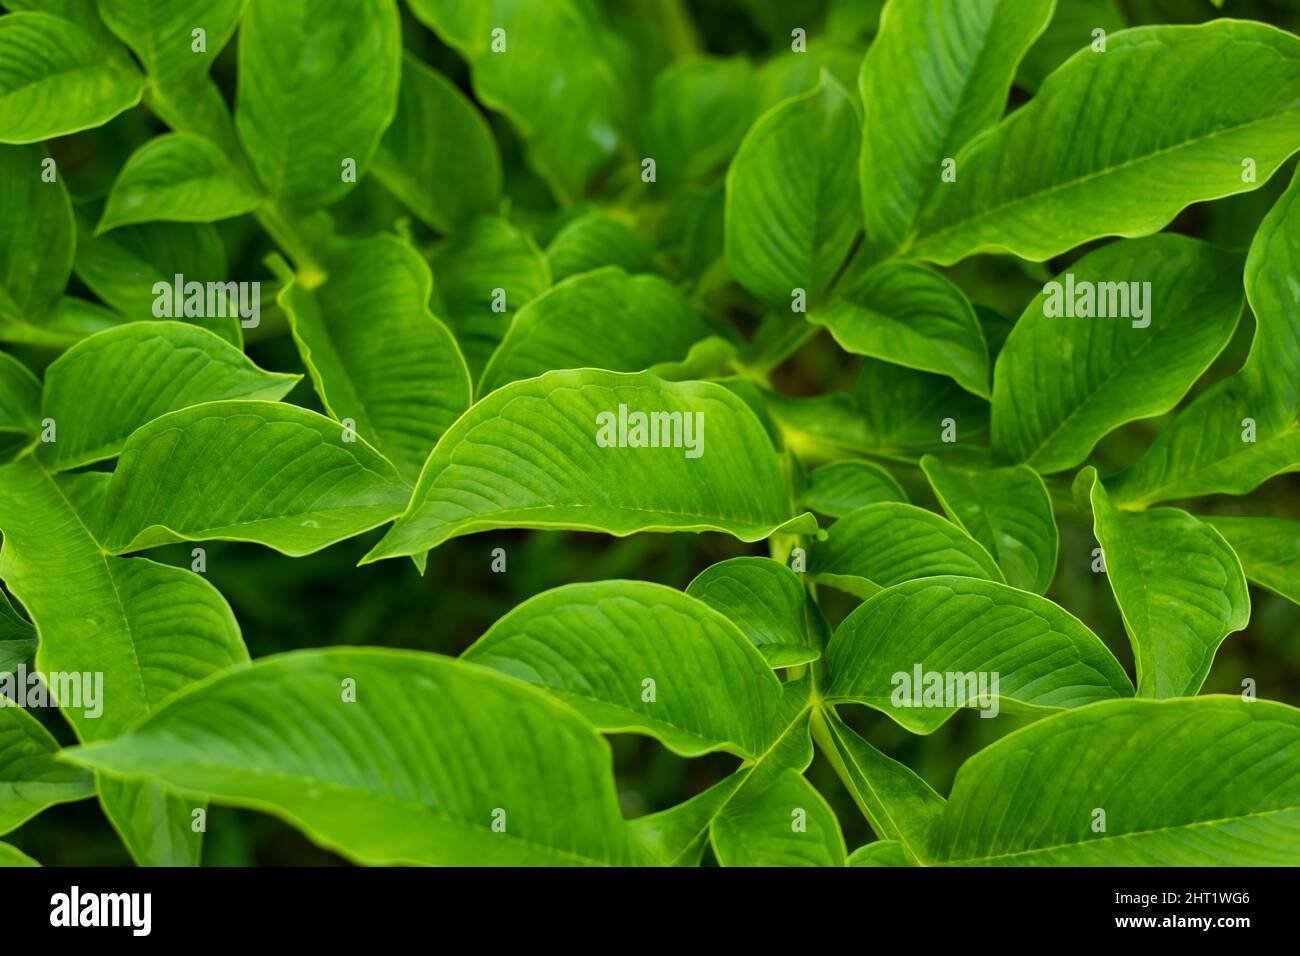 C'est la feuille d'un arbre en pente. Le dhal est connu comme un légume traditionnel de l'Asie. C'est une source riche de vitamines Banque D'Images